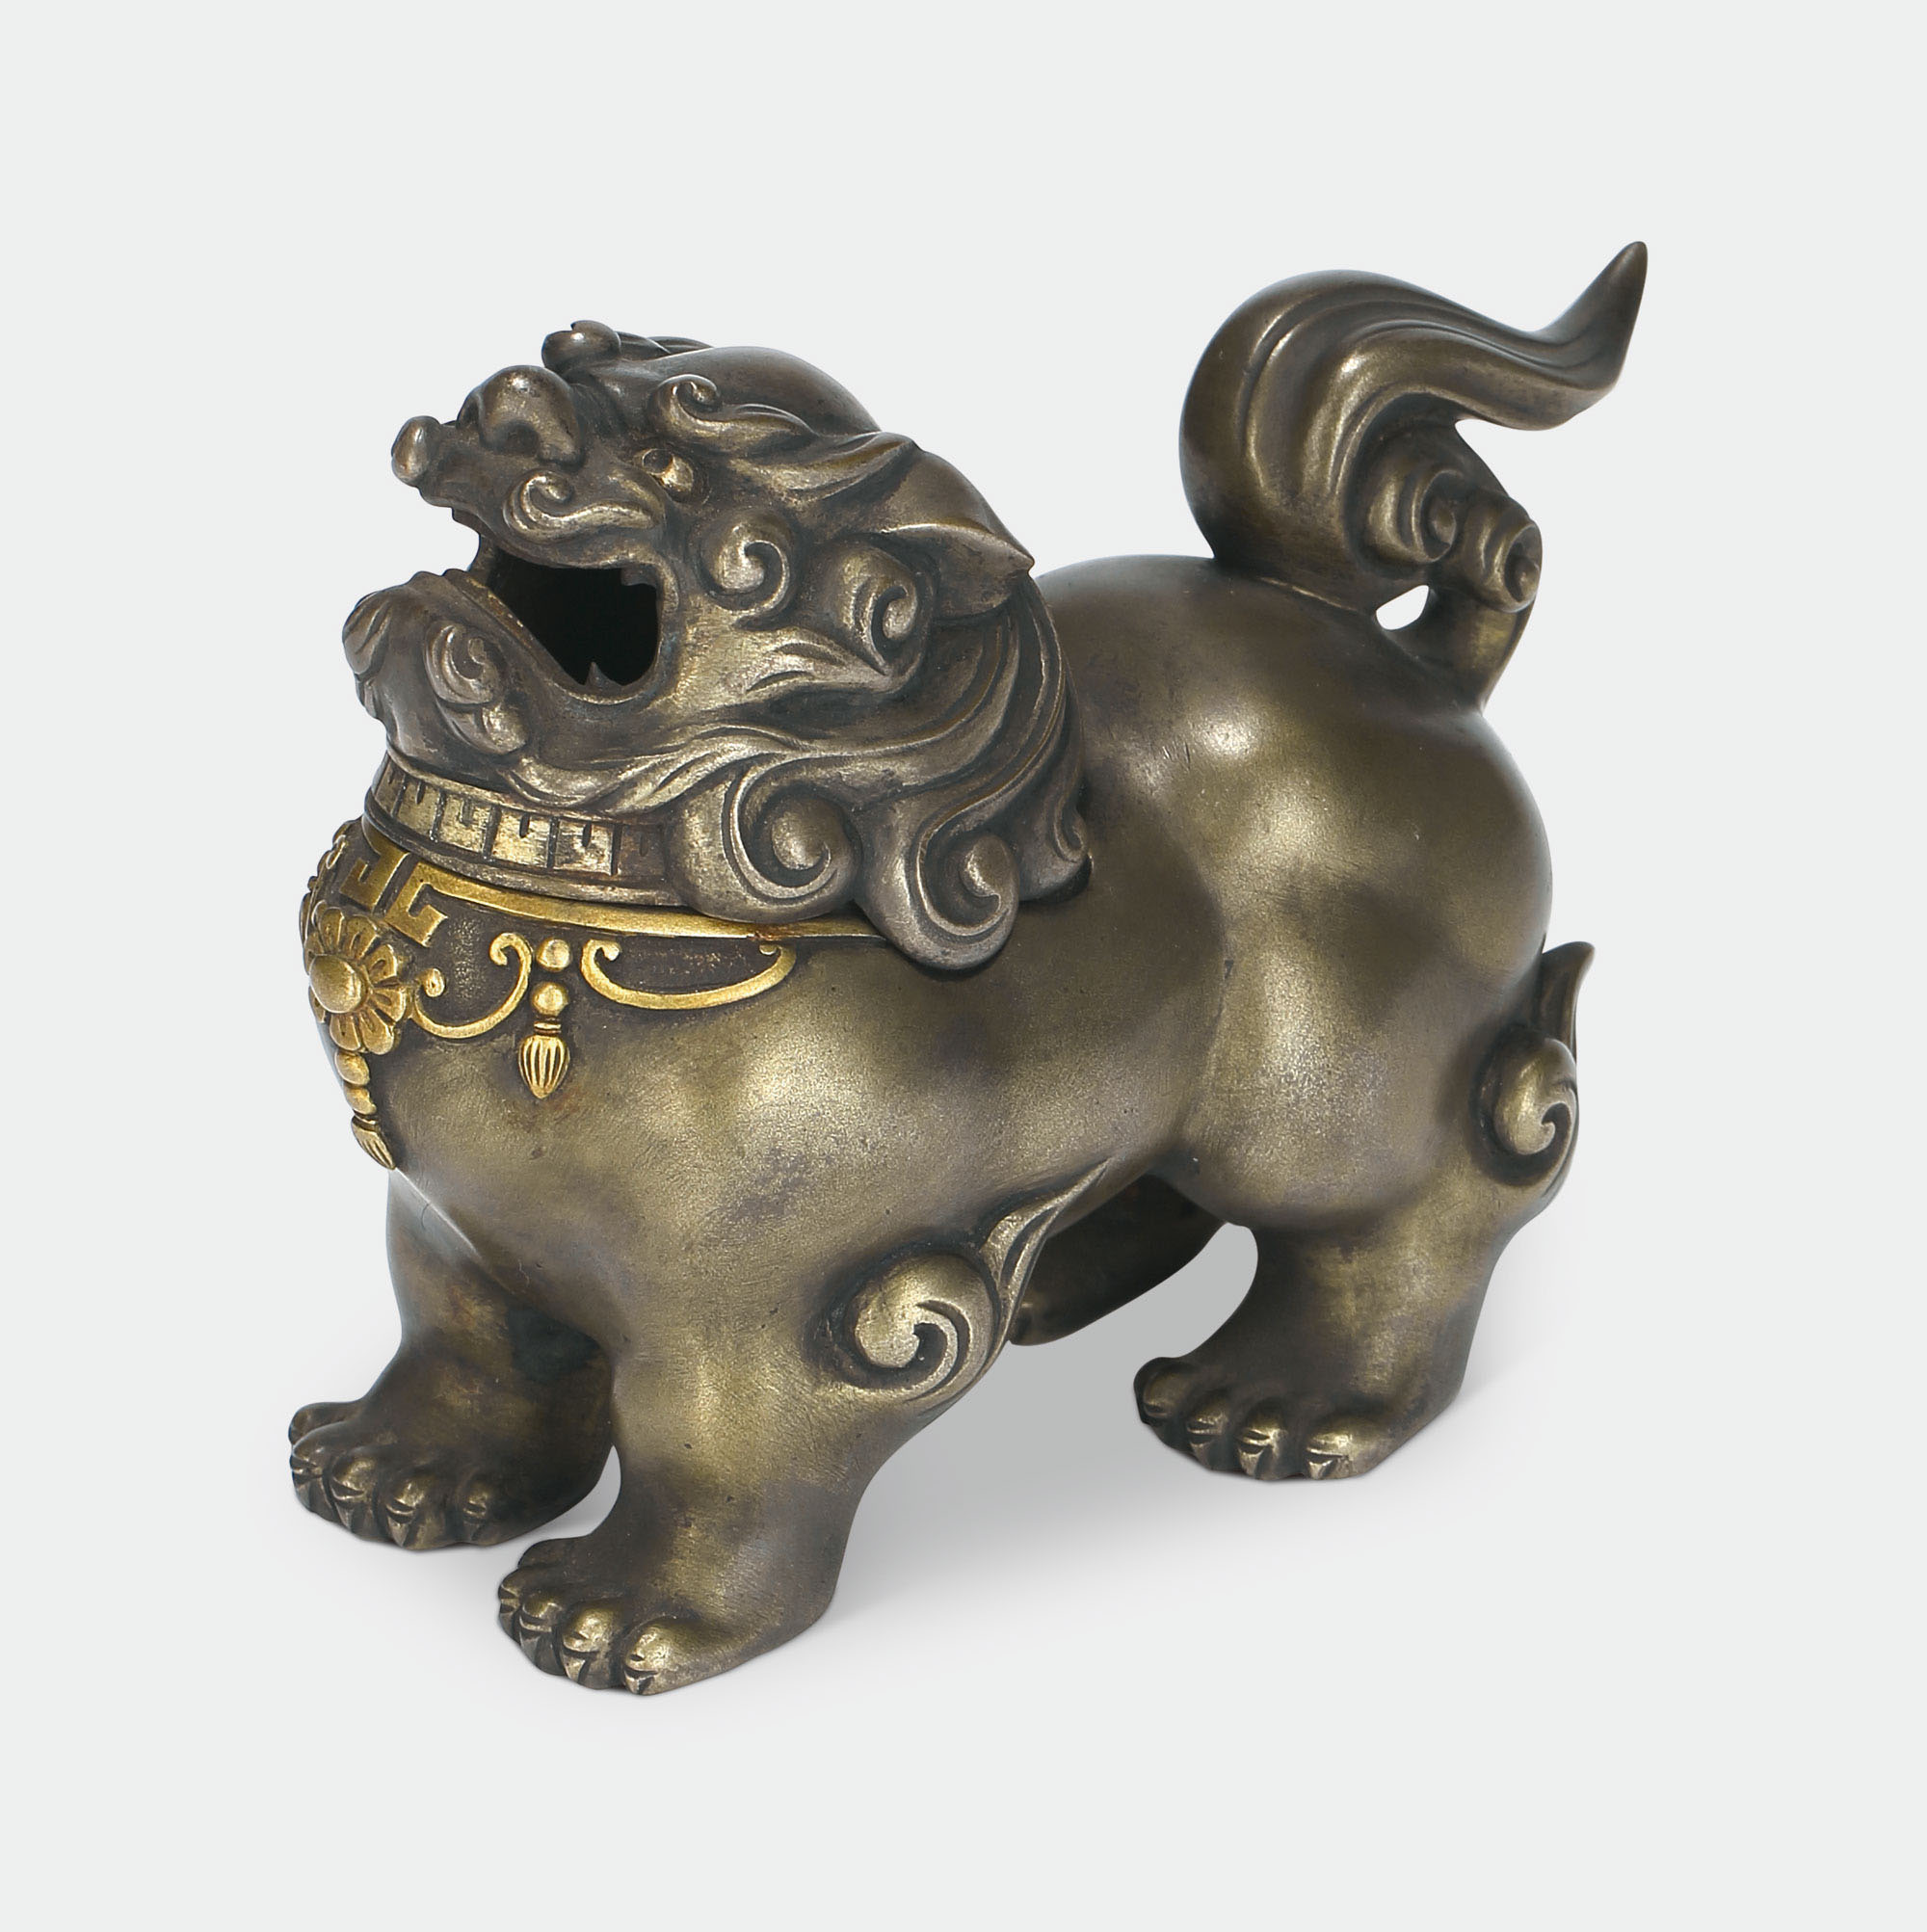 佚名,明治期胧银鎏金狮子香炉,佚名作品拍卖预展,佚名作品拍卖价格,北京